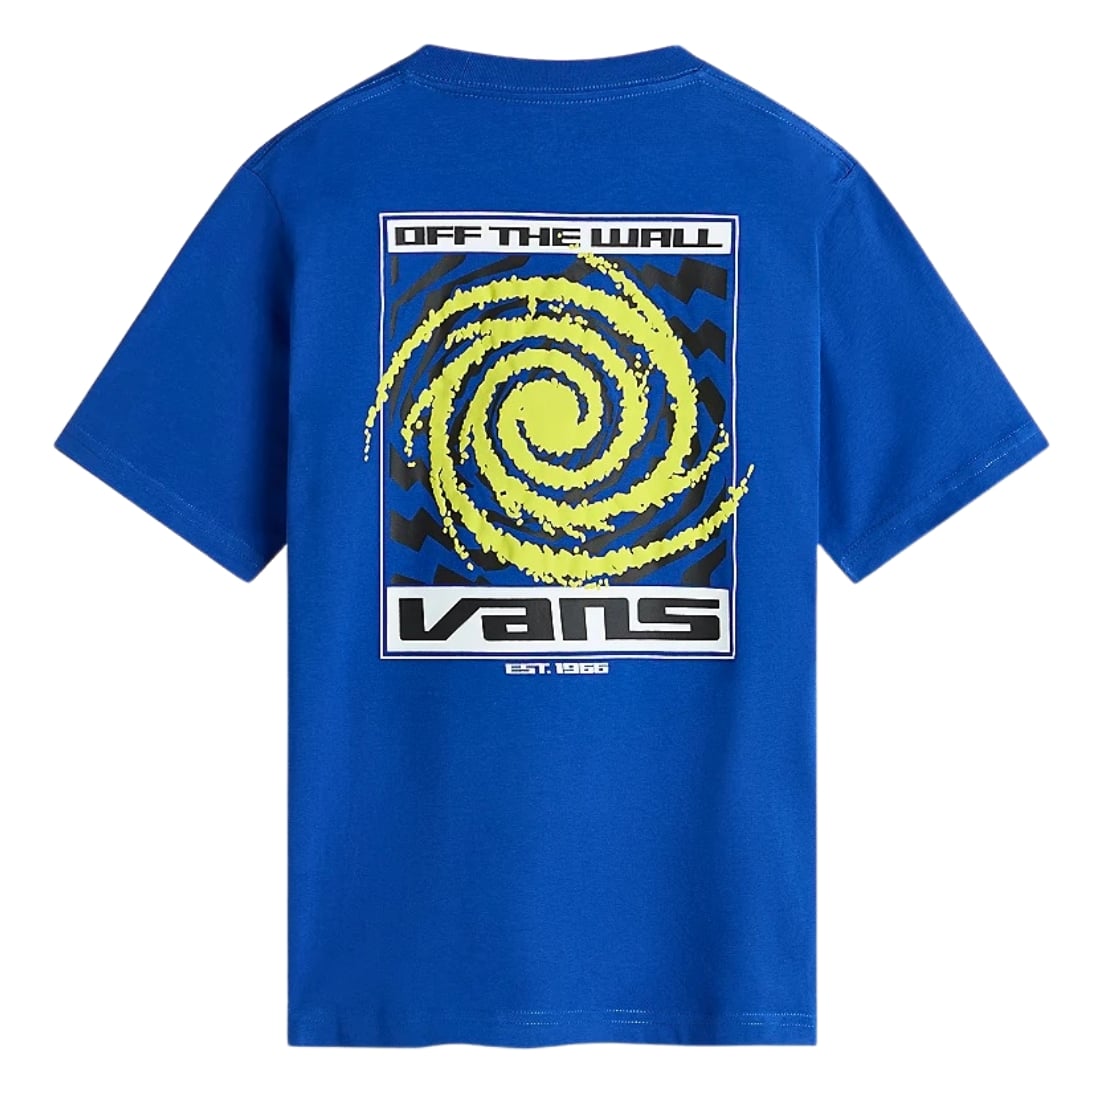 Vans Youth Galaxy Kids T-Shirt - Surf The Web - Boys Skate Brand T-Shirt by Vans